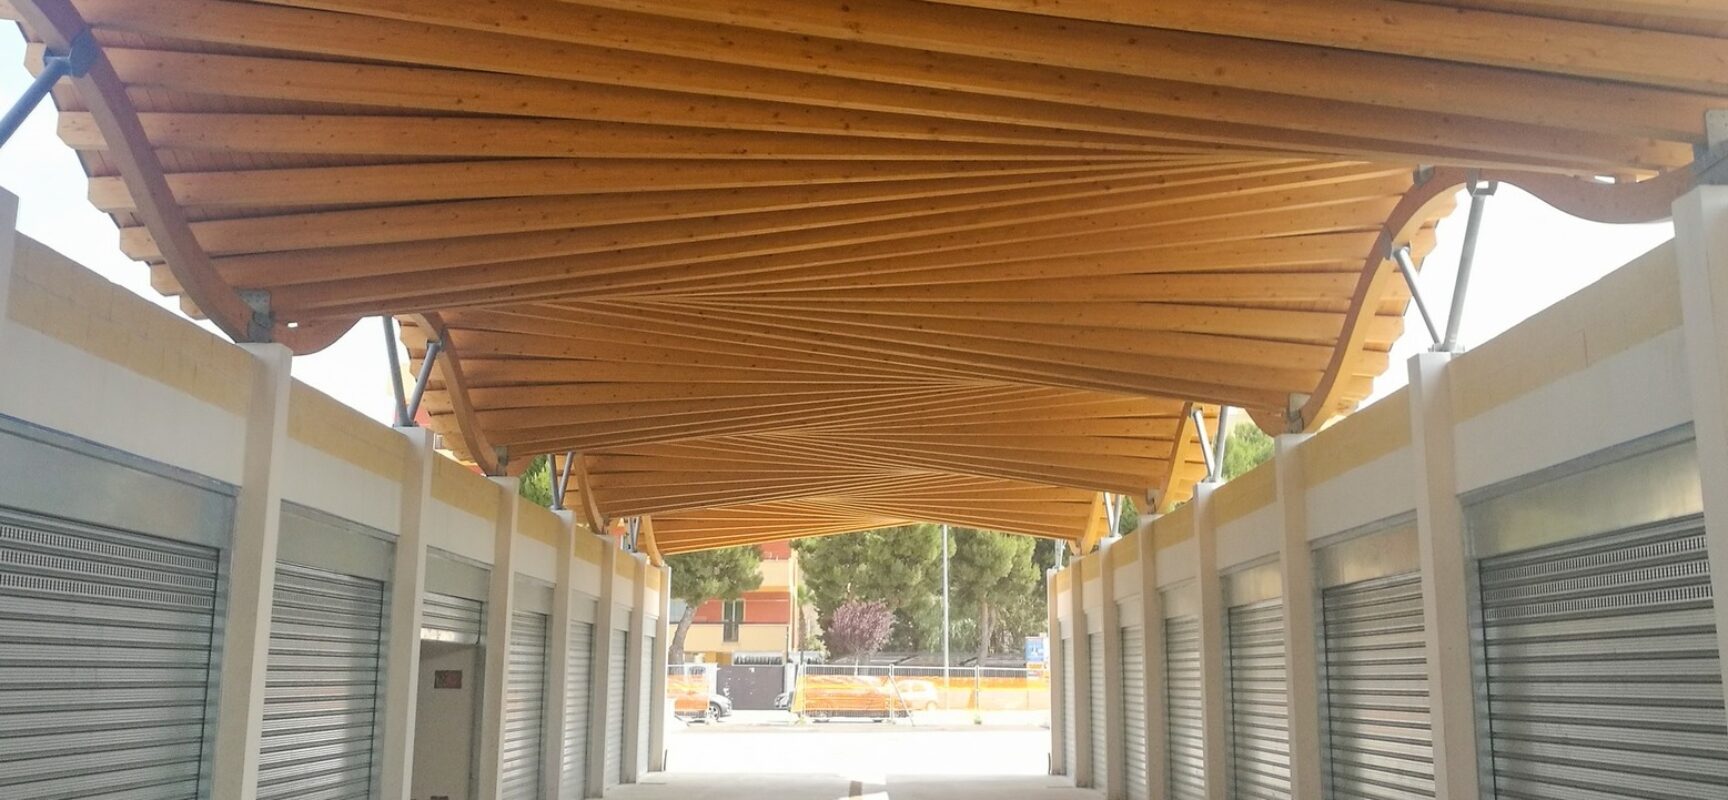 Inaugurazione area mercatale, Spina: “Angarano inviti chi ha ideato e finanziato progetto”